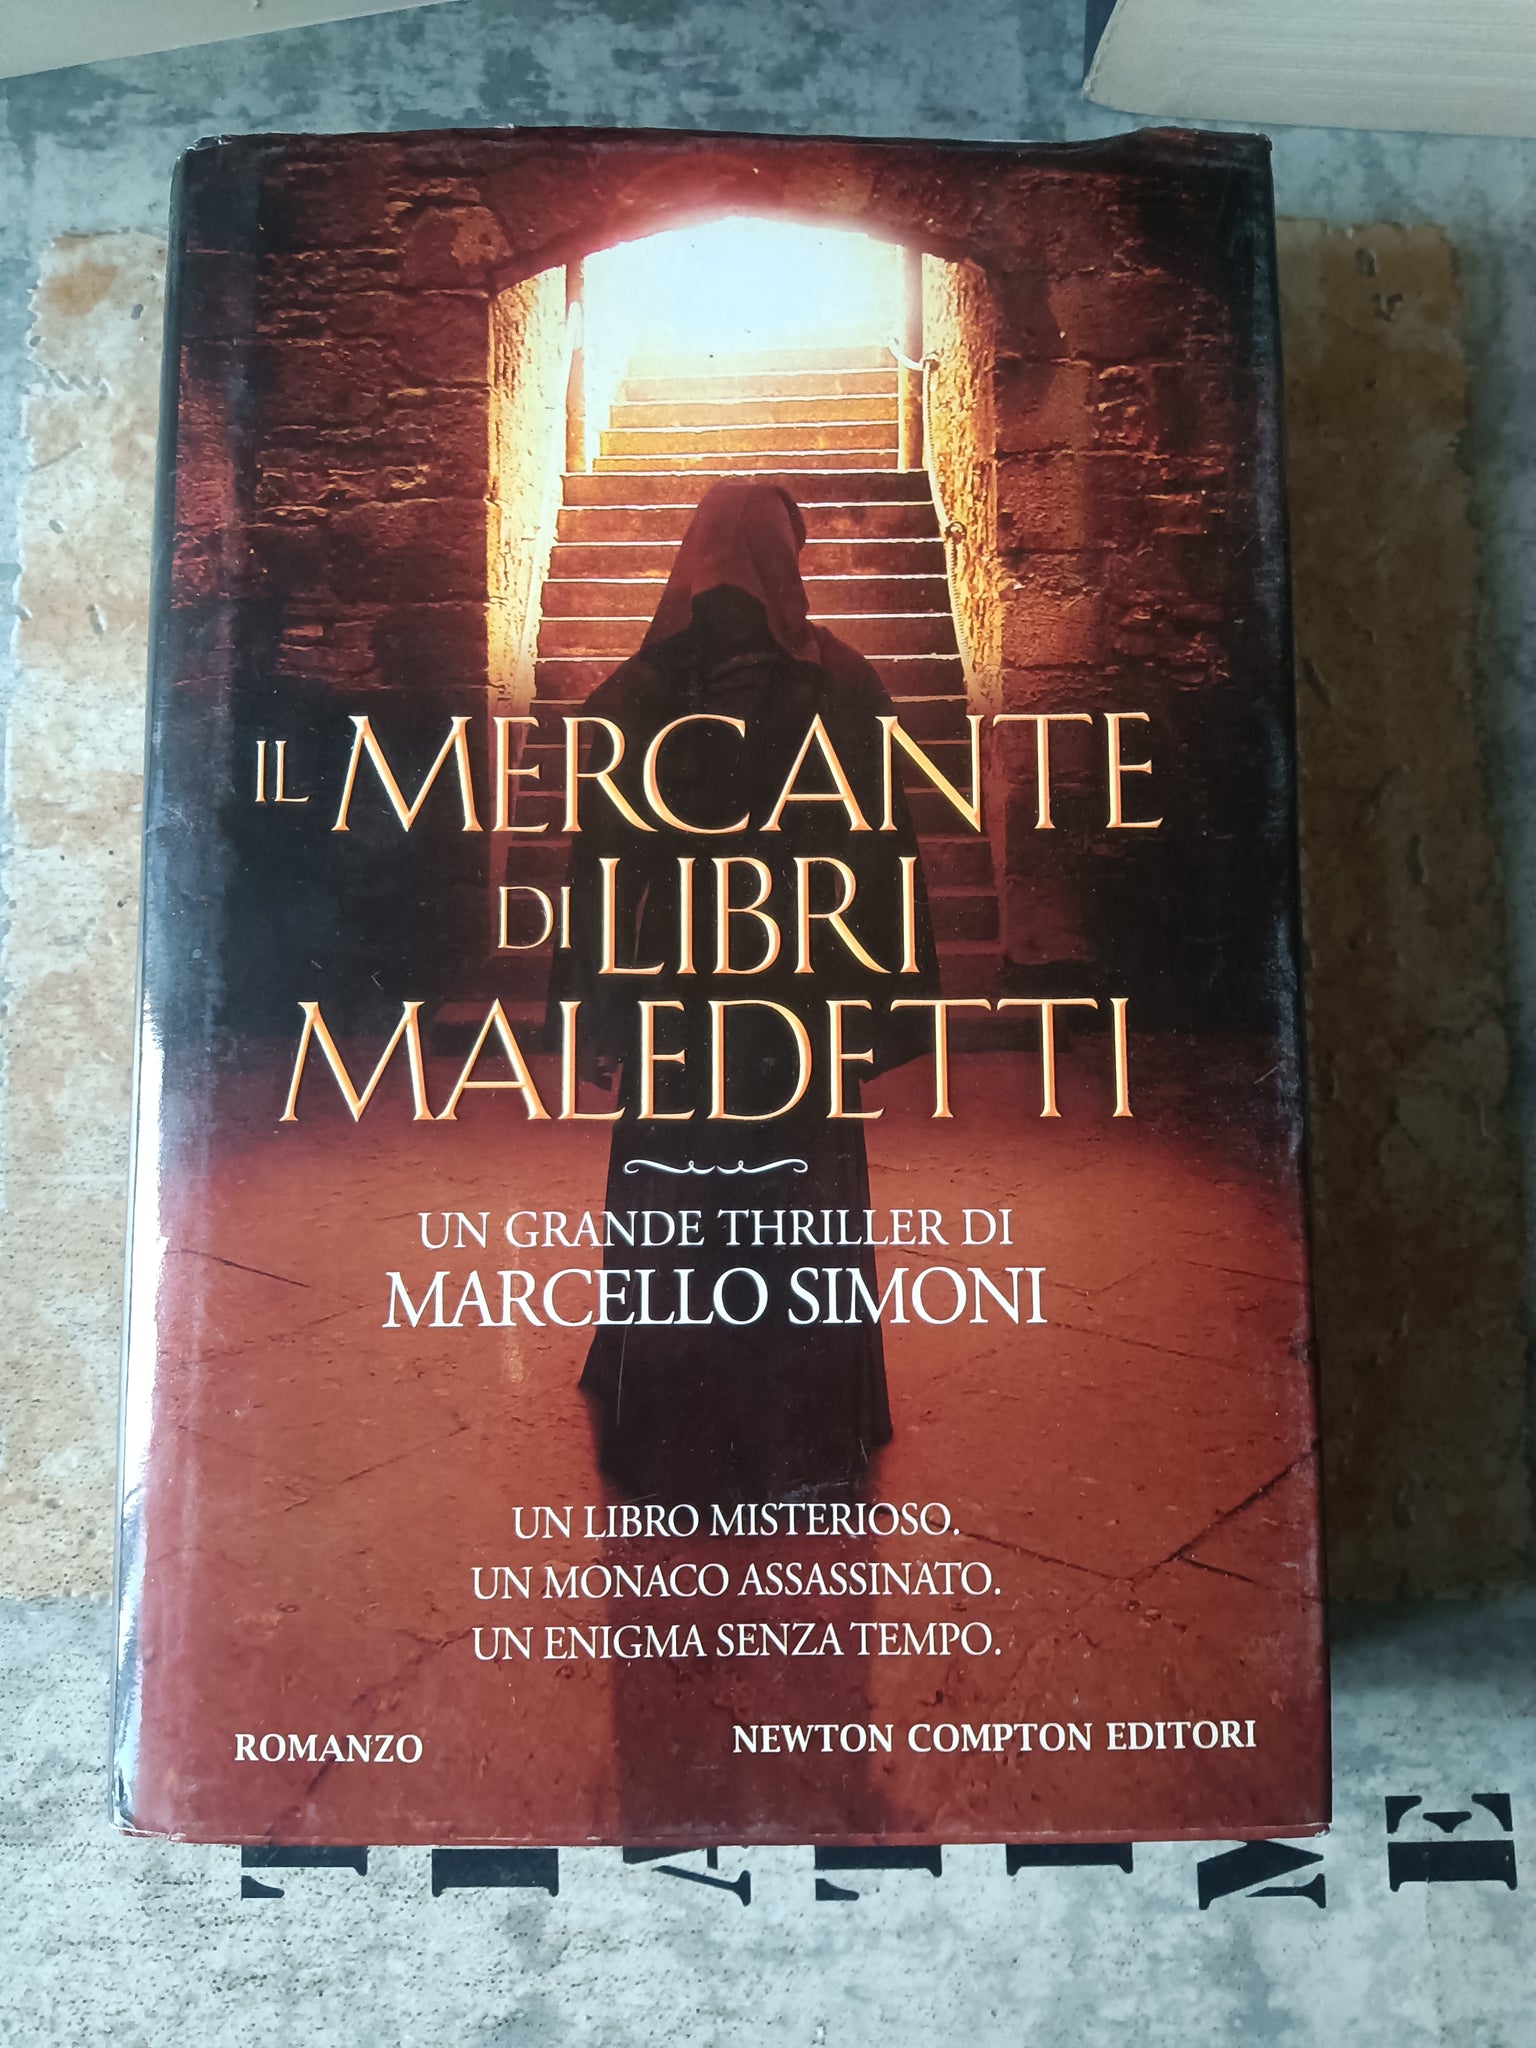 Il mercante di libri maledetti | Marcello simoni